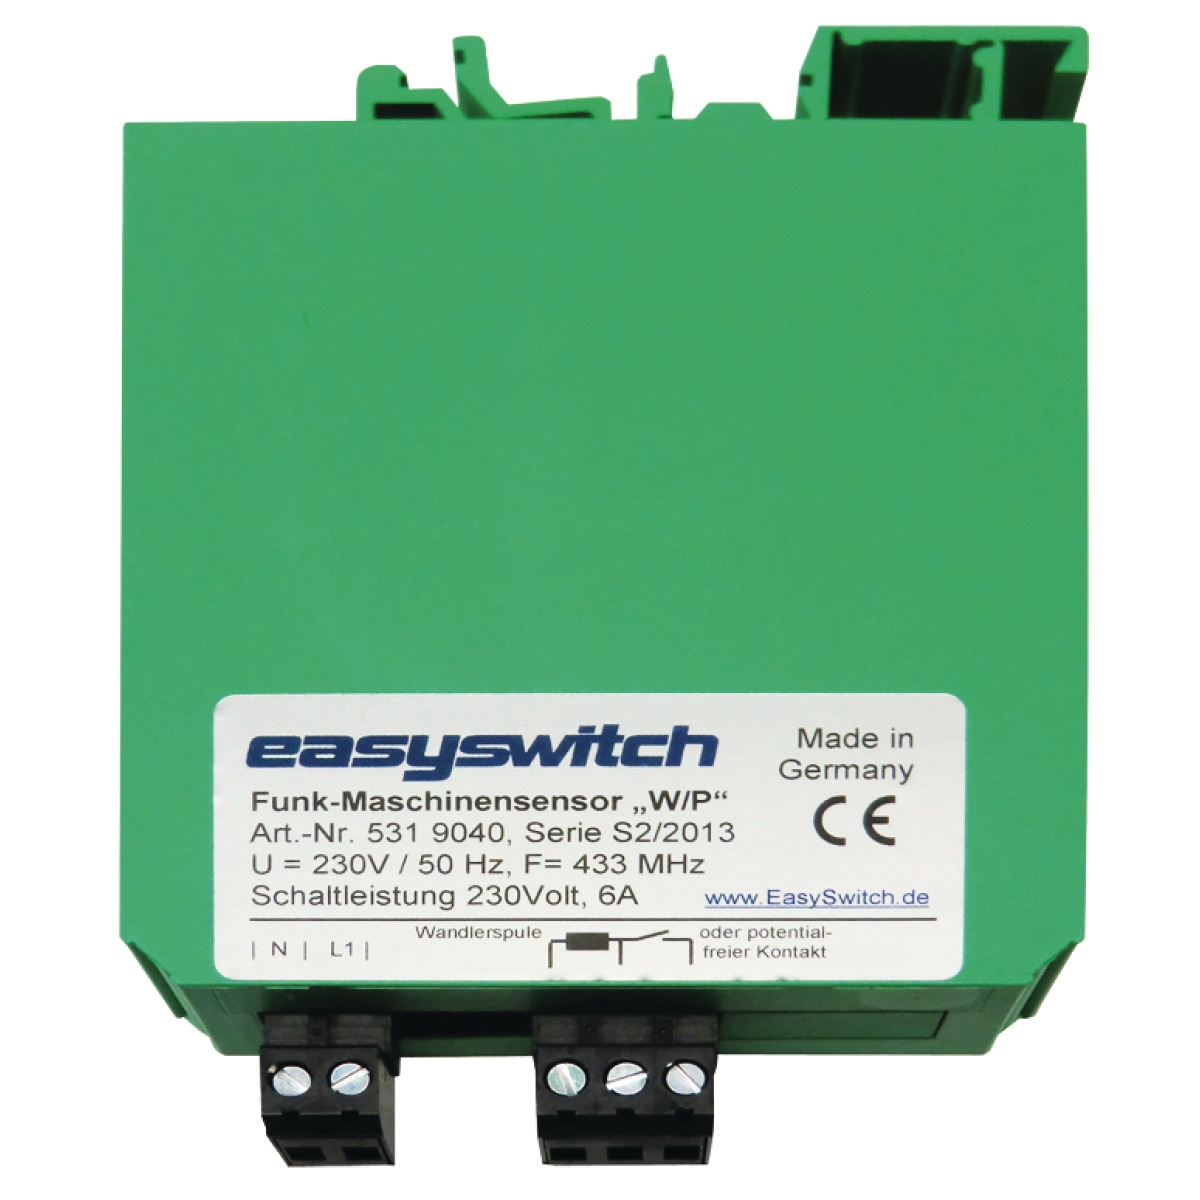 Maschinen-Sensor EasySwitch FUNK für fest angeschlossene Maschinen